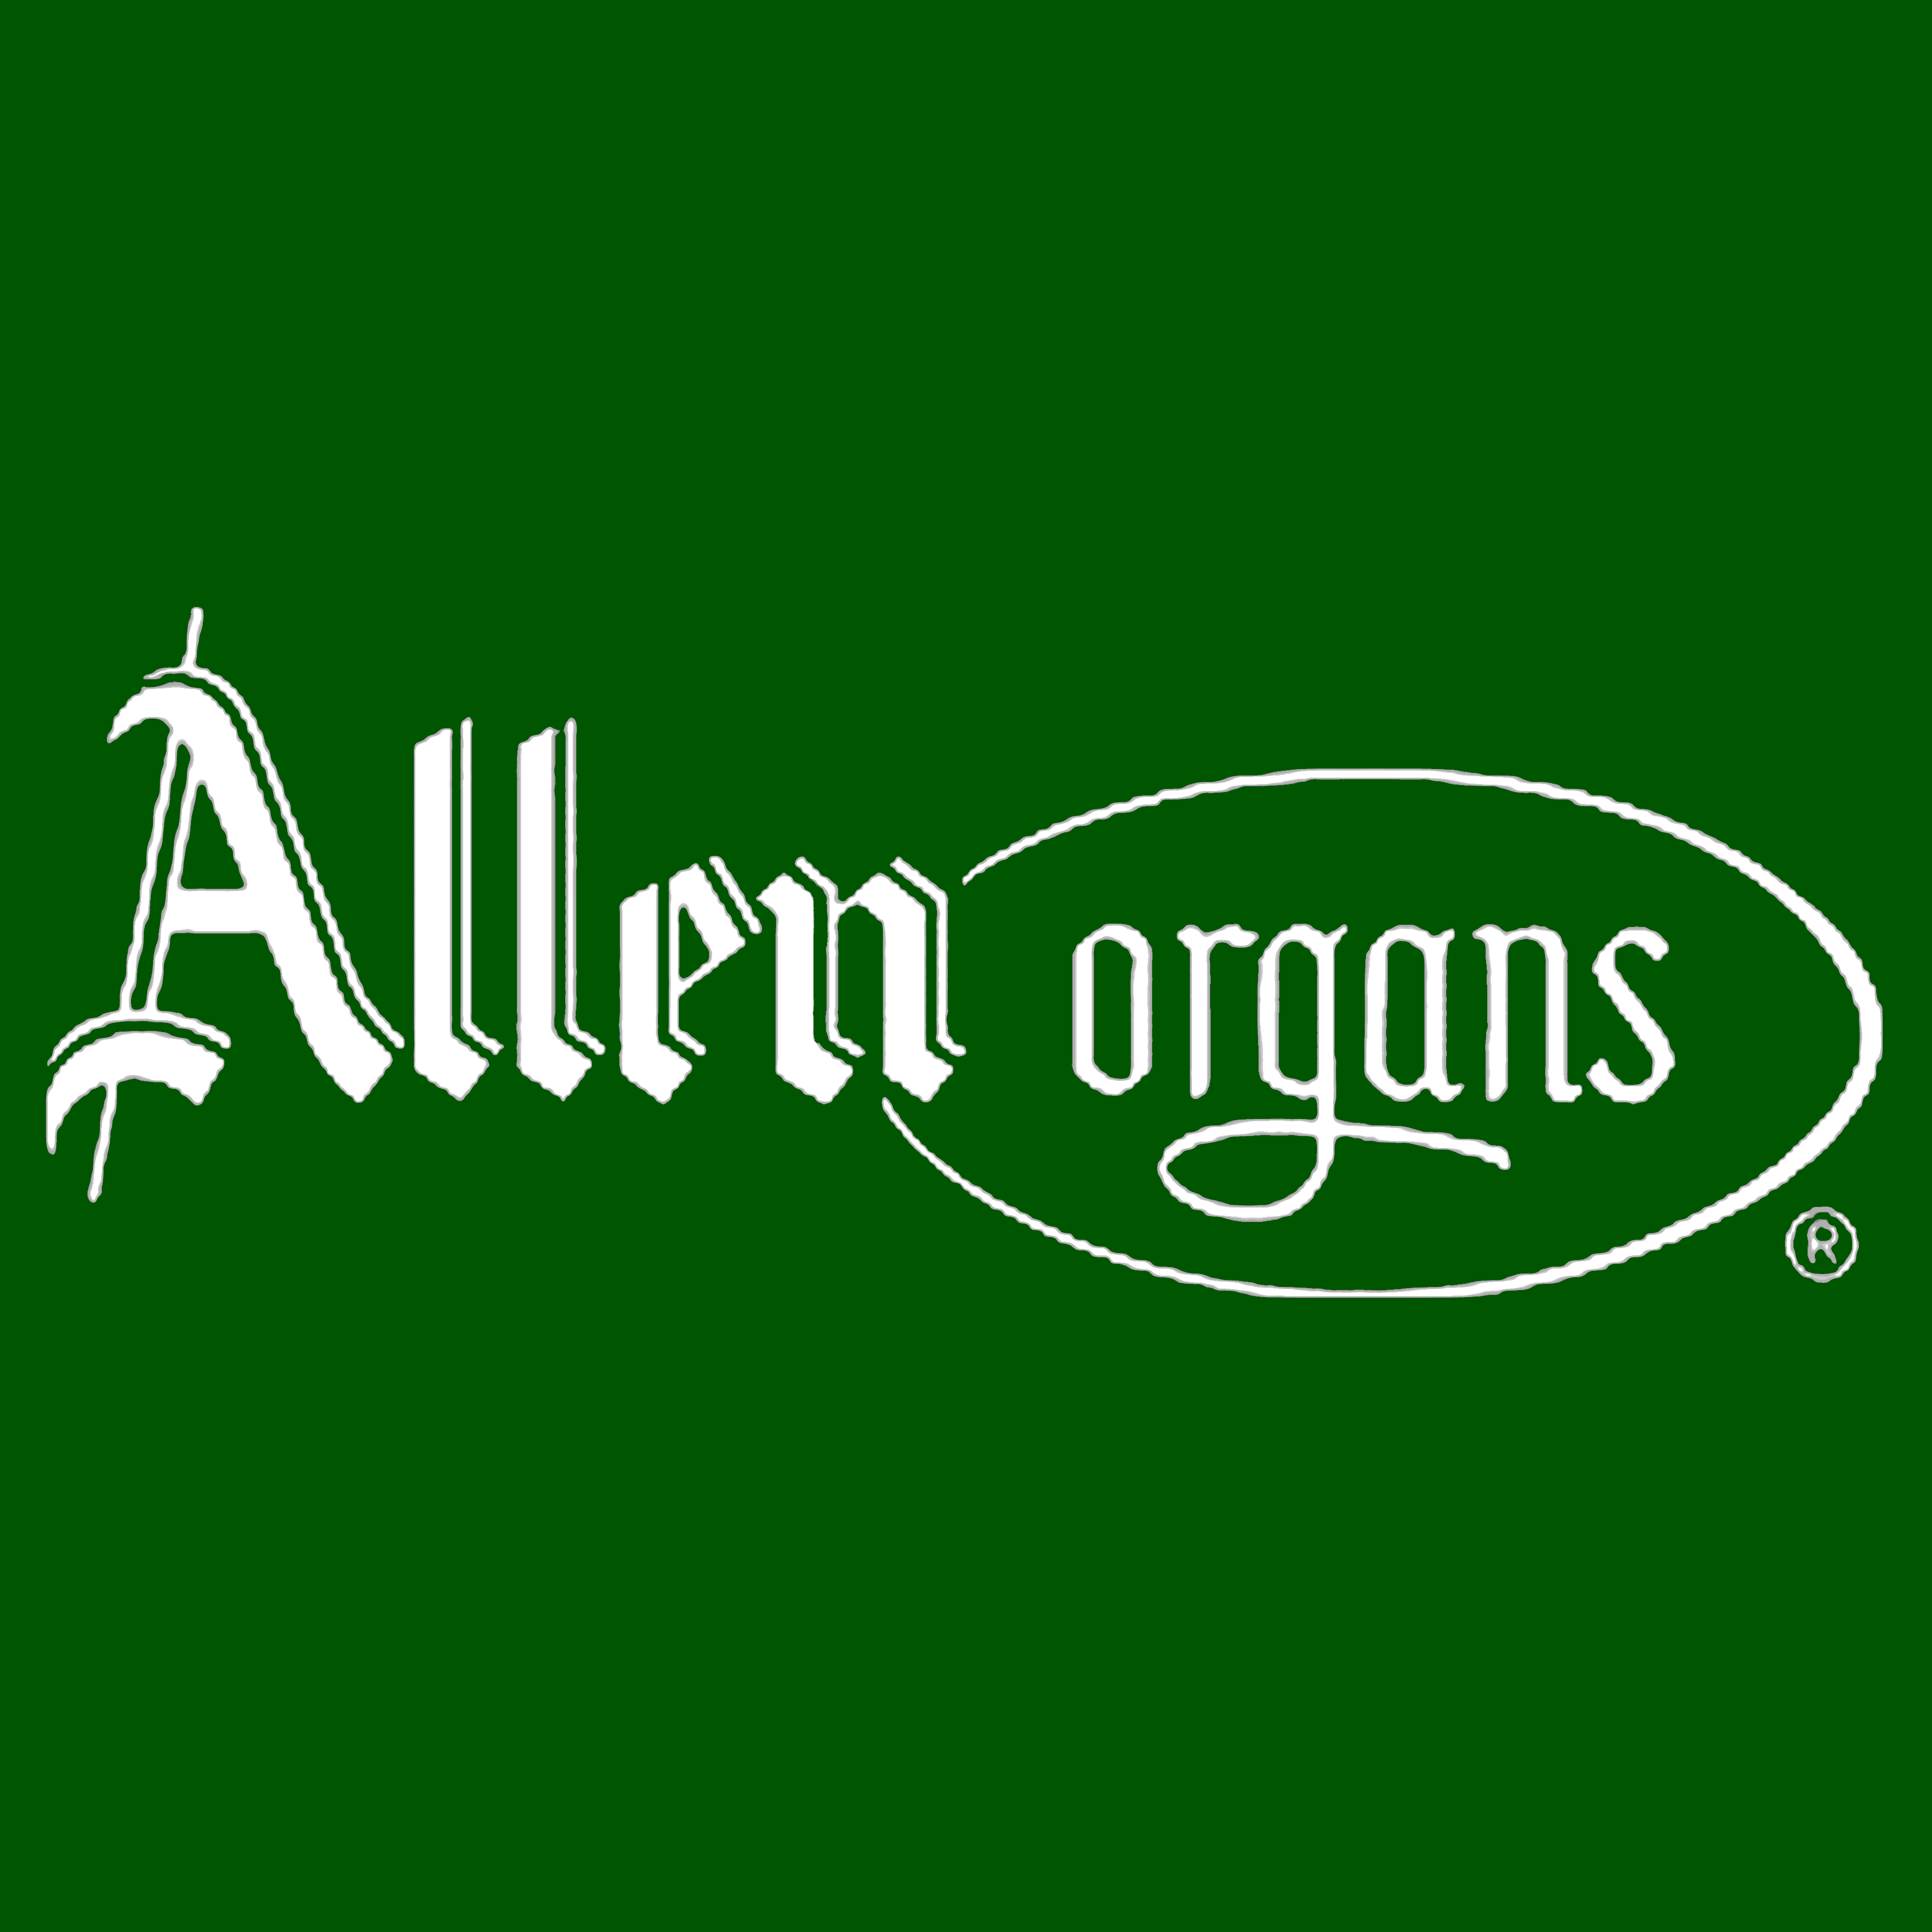 Images Allen Digital Computer Organ Studios WA